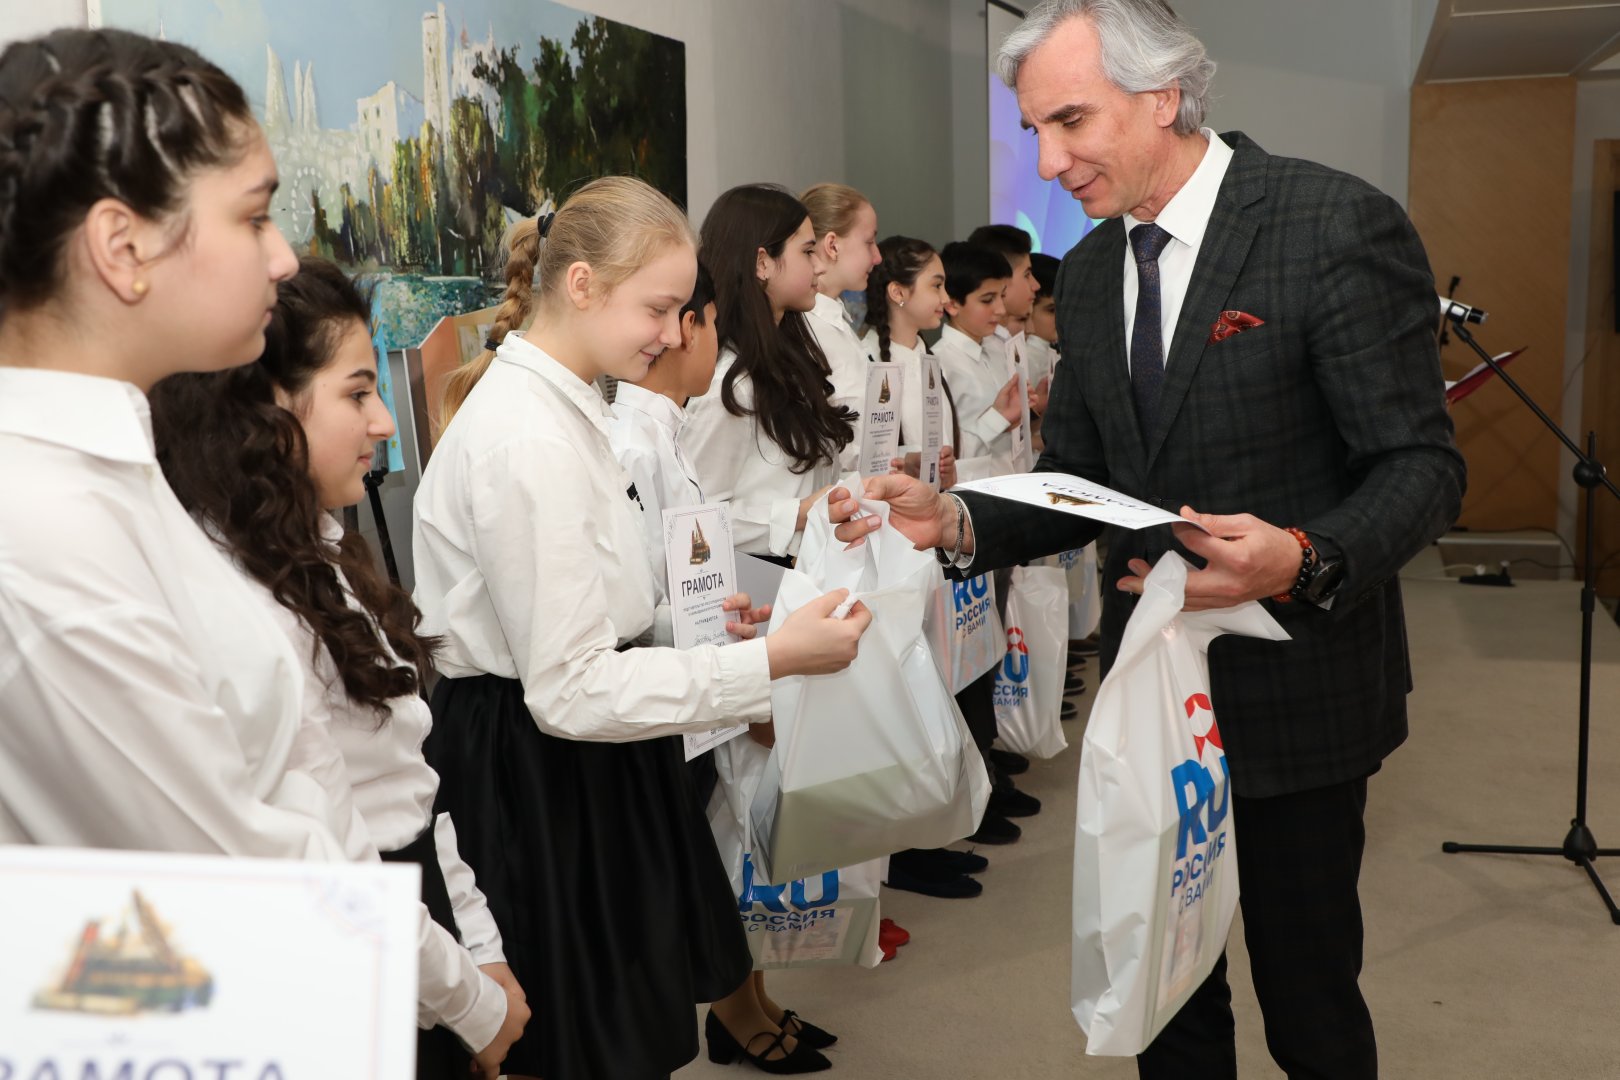 В Баку состоялась церемония награждения победителей проекта "Книги и писатели юбиляры" (ФОТО)